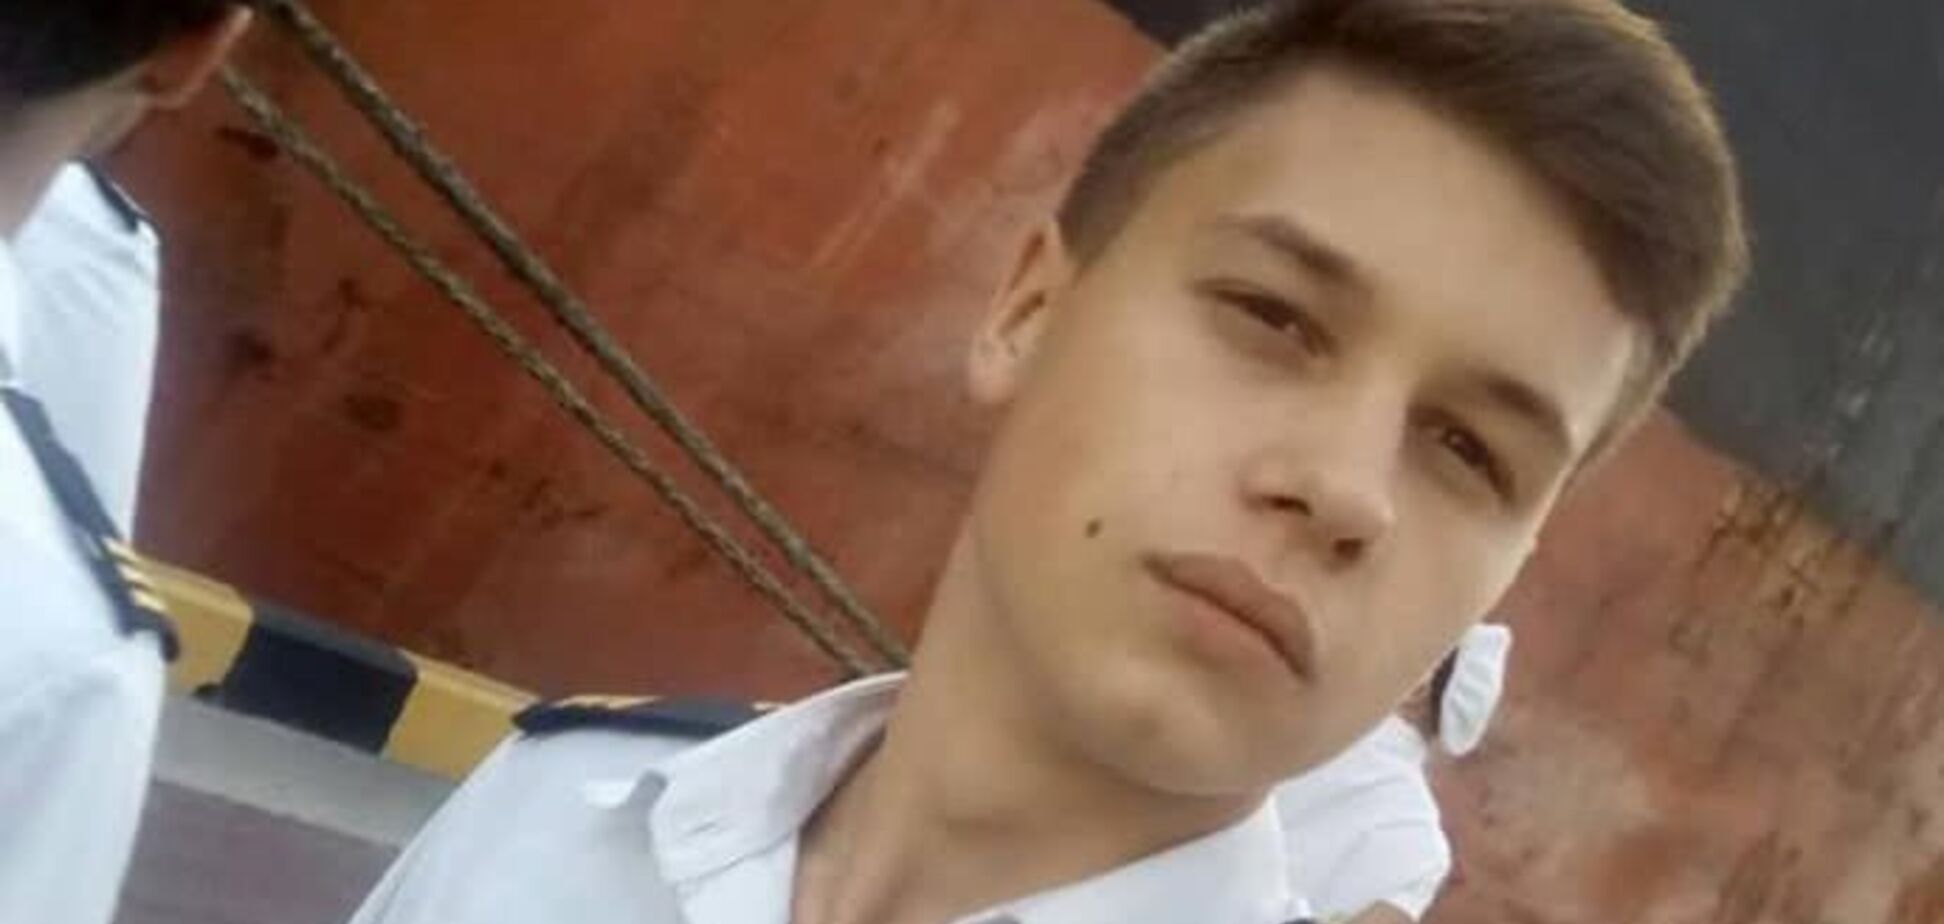  У пленного украинского моряка в РФ заподозрили смертельно опасную болезнь: что произошло